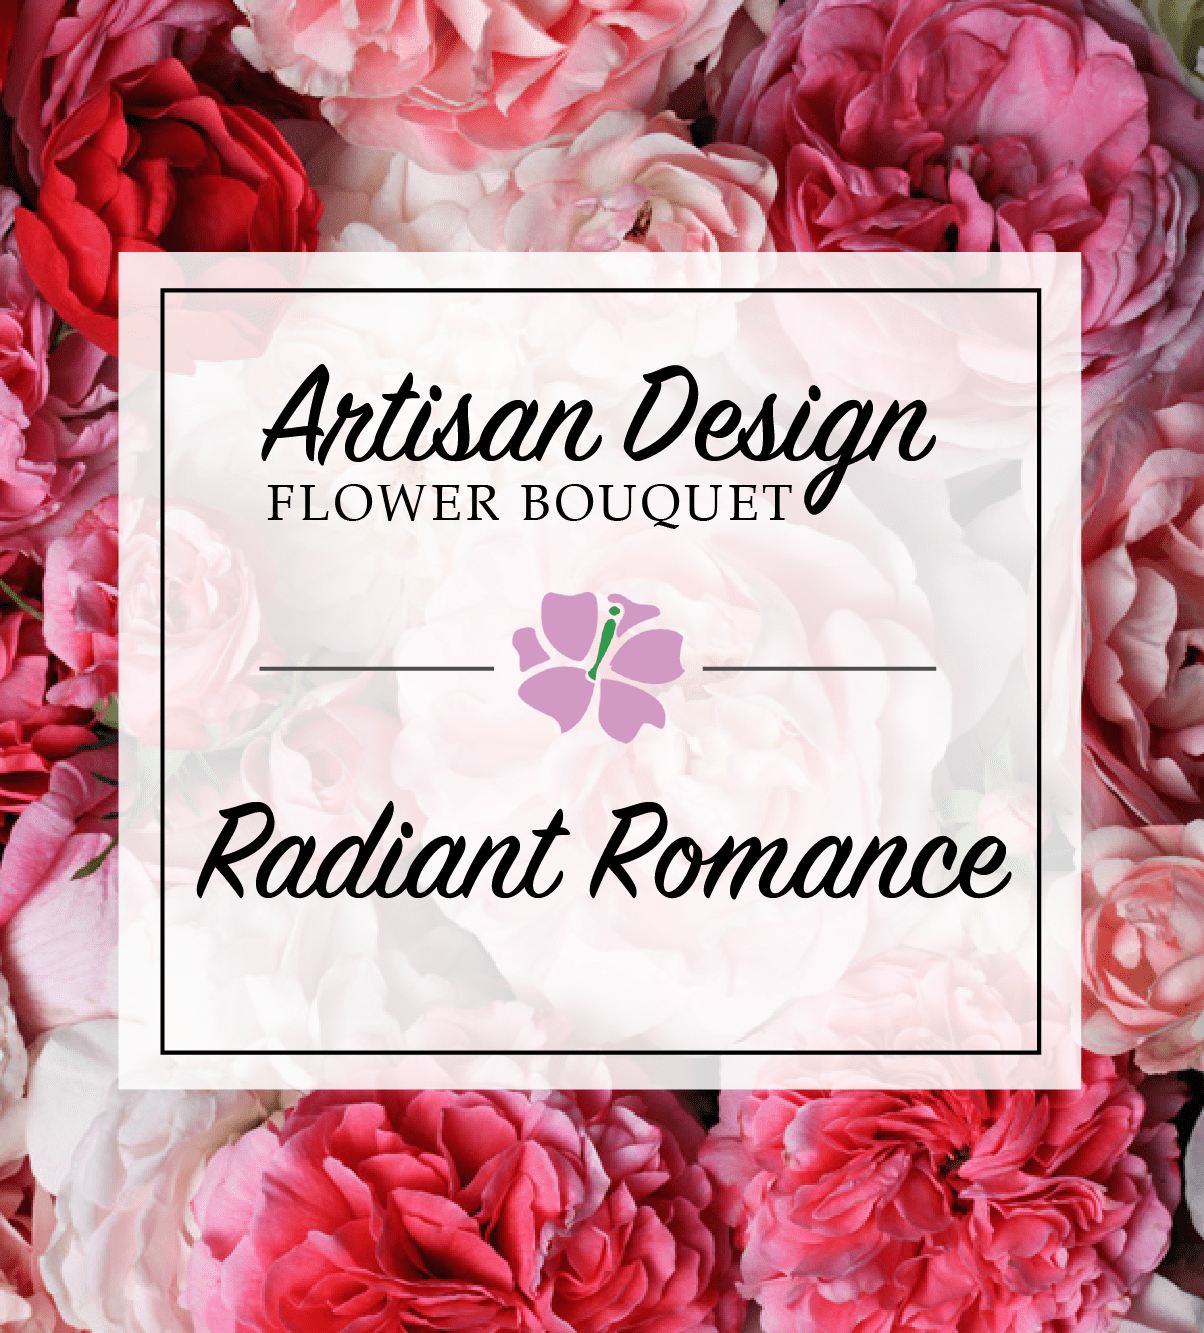 Artist's Design: Radiant Romance | Avas Flowers